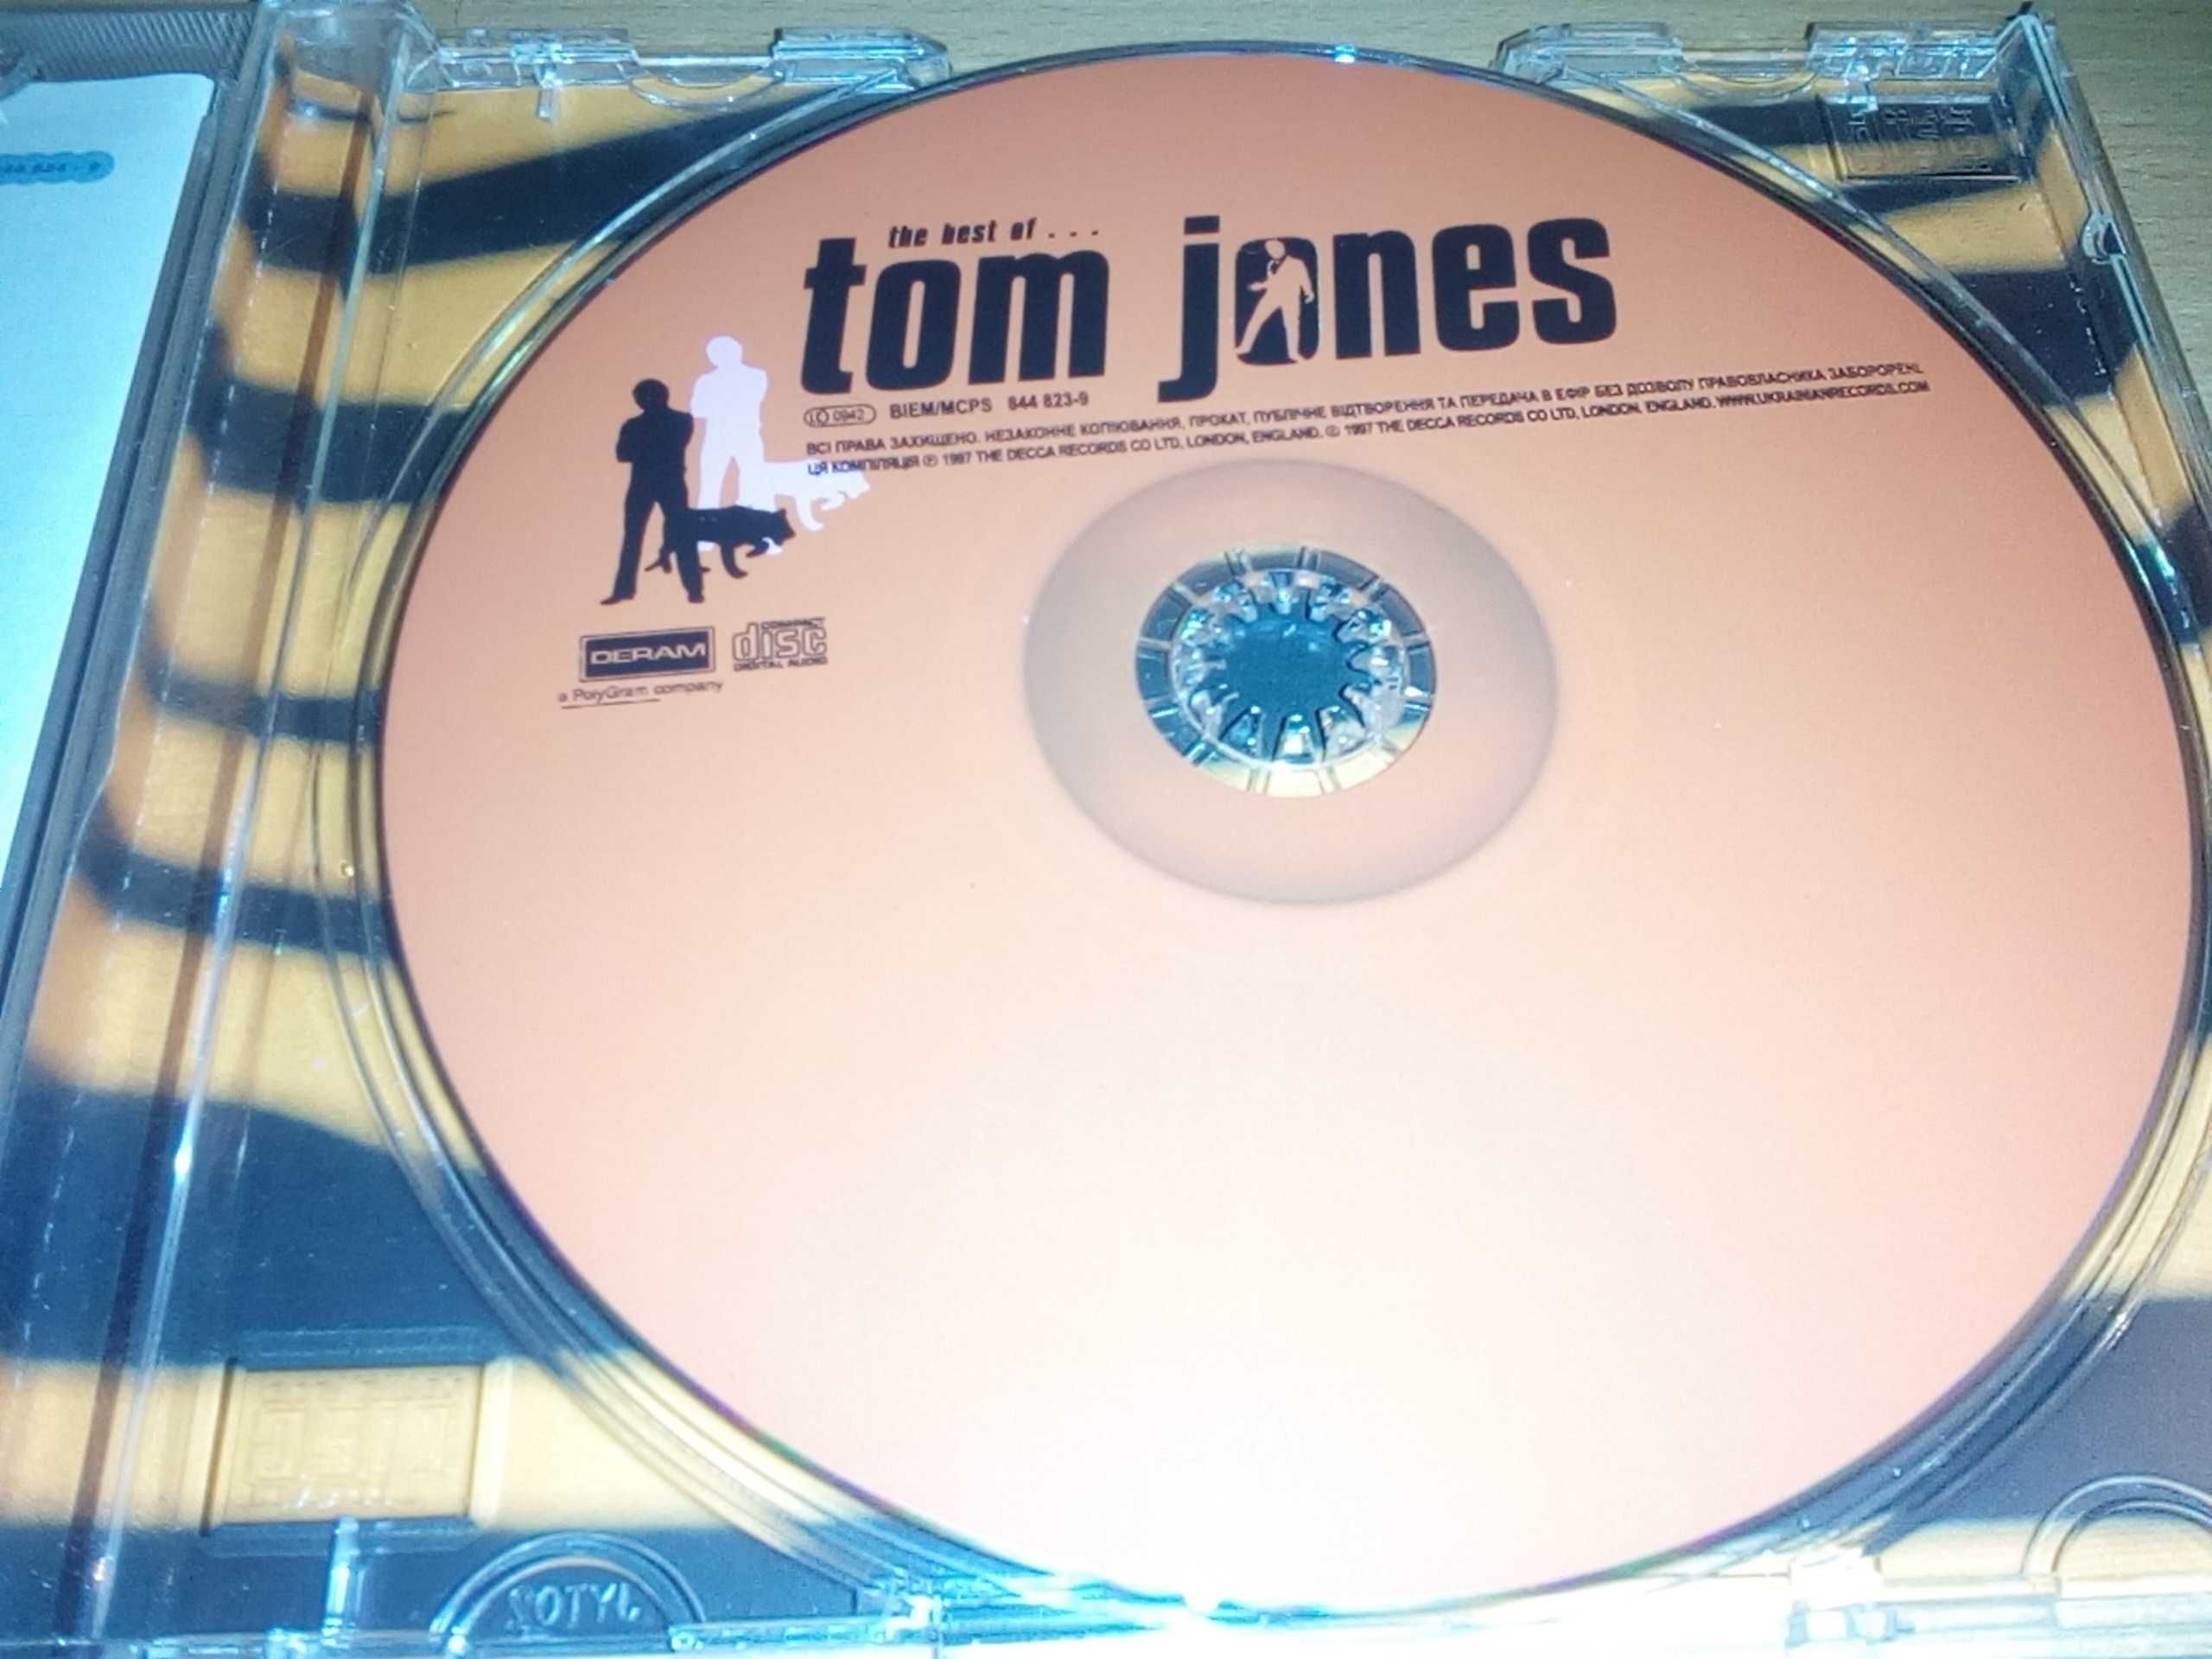 The best of Tom Jones